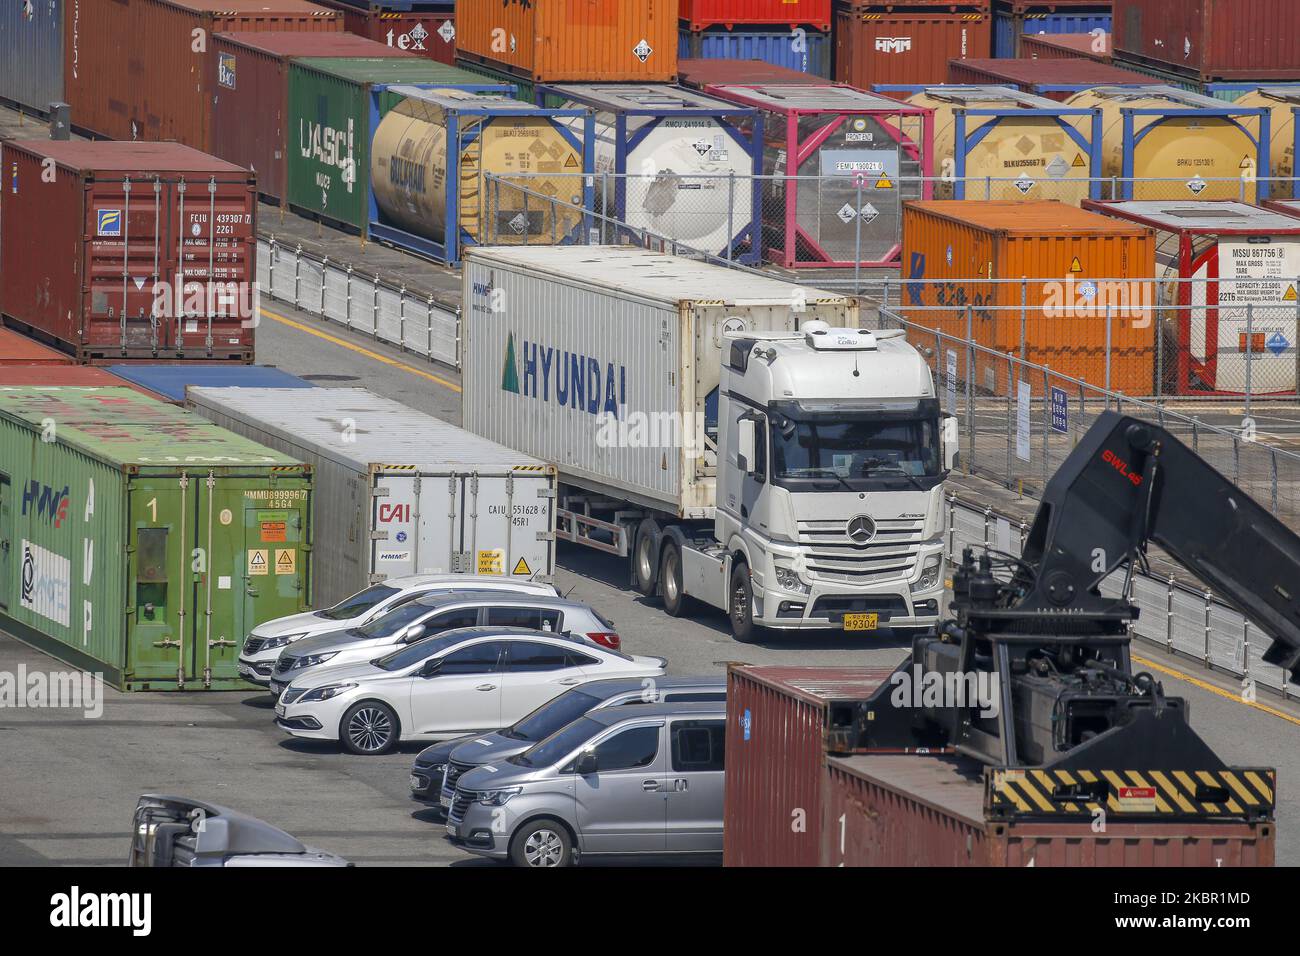 A View-Szene des neuen Containerhafens in Busan, Südkorea, am 10. Juni 2020. Die südkoreanische Wirtschaft wird in diesem Jahr voraussichtlich 1,2 Prozent einbrechen, da die Coronavirus-Pandemie und die Lockdown-Maßnahmen den globalen Handel und Konsum erschüttert haben, sagte die Organisation für wirtschaftliche Zusammenarbeit und Entwicklung (OECD) am Mittwoch. Die aktualisierte Prognose, die die schärfste Kontraktion seit der asiatischen Finanzkrise von 1998 sein würde, markierte eine drastische Herabstufung gegenüber der OECD-Prognose vom März mit einer Expansion von 2 Prozent. Die jüngste Prognose der OECD ist düsterer als eine Prognose der Bank of Korea (BOK), die den Kore prognostiziert hat Stockfoto